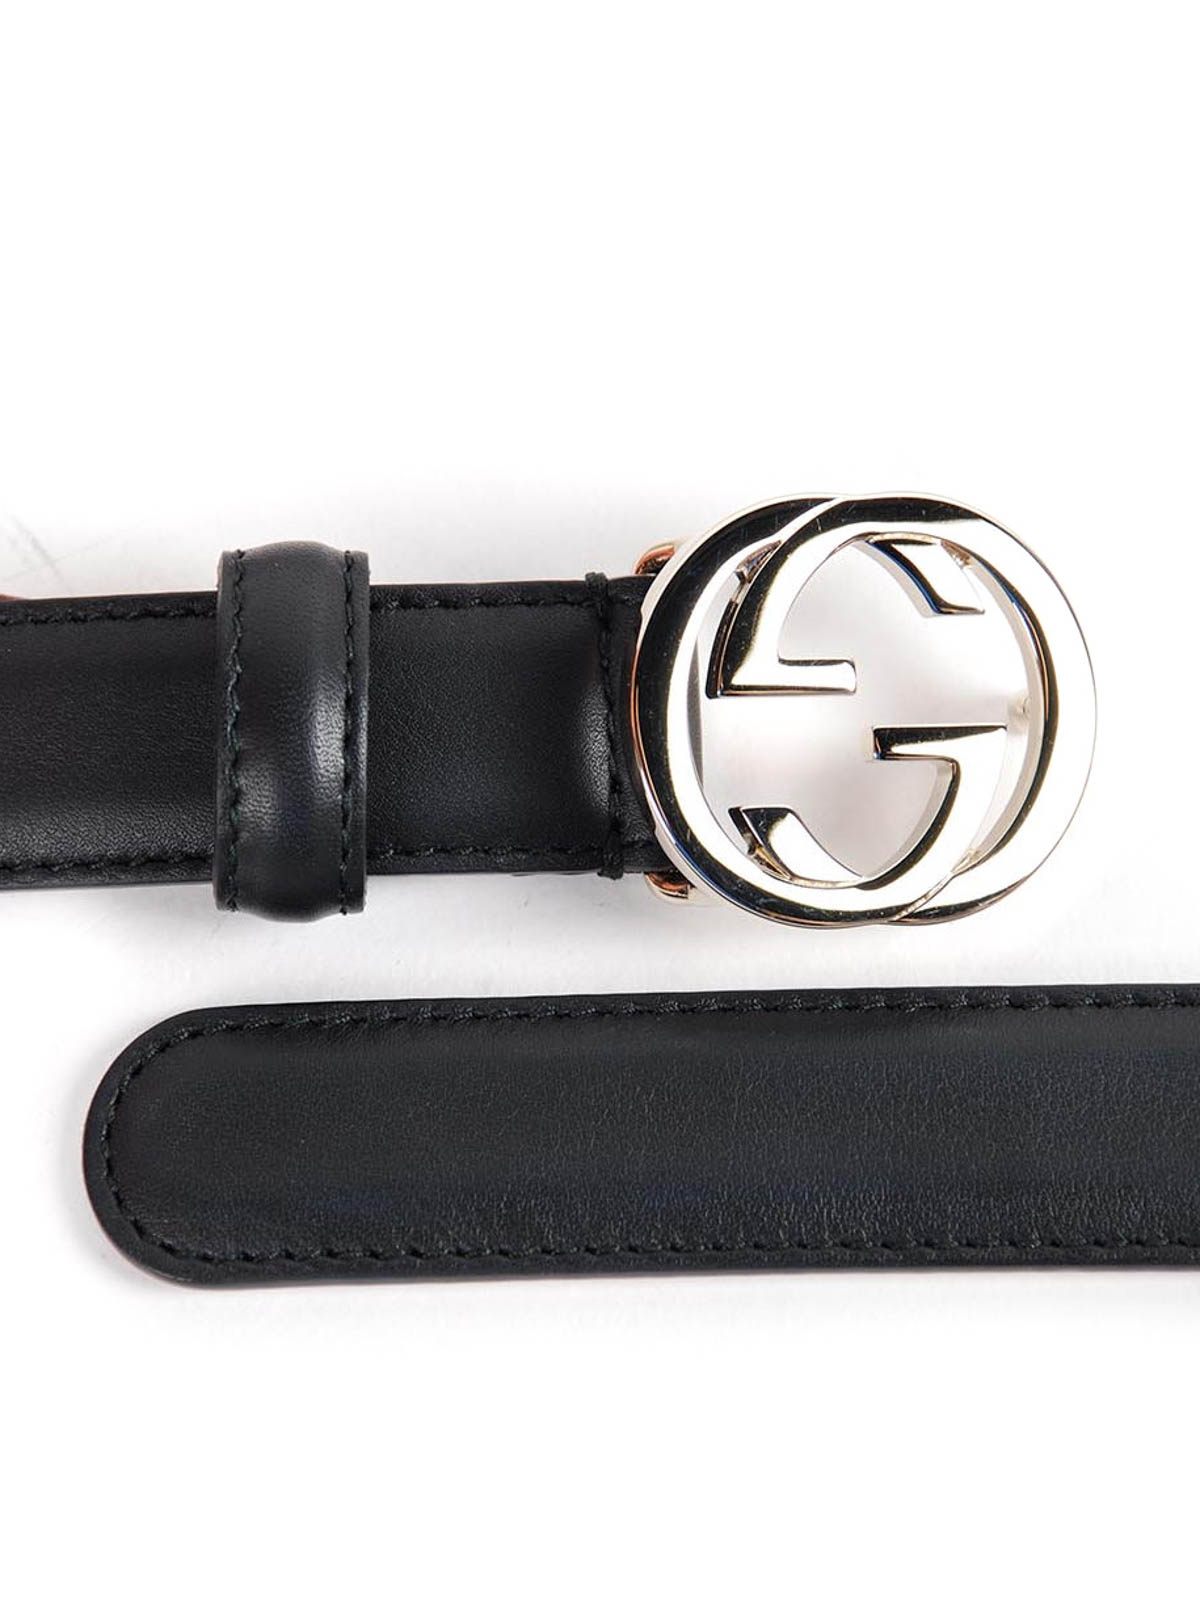 guccissima belt with interlocking g